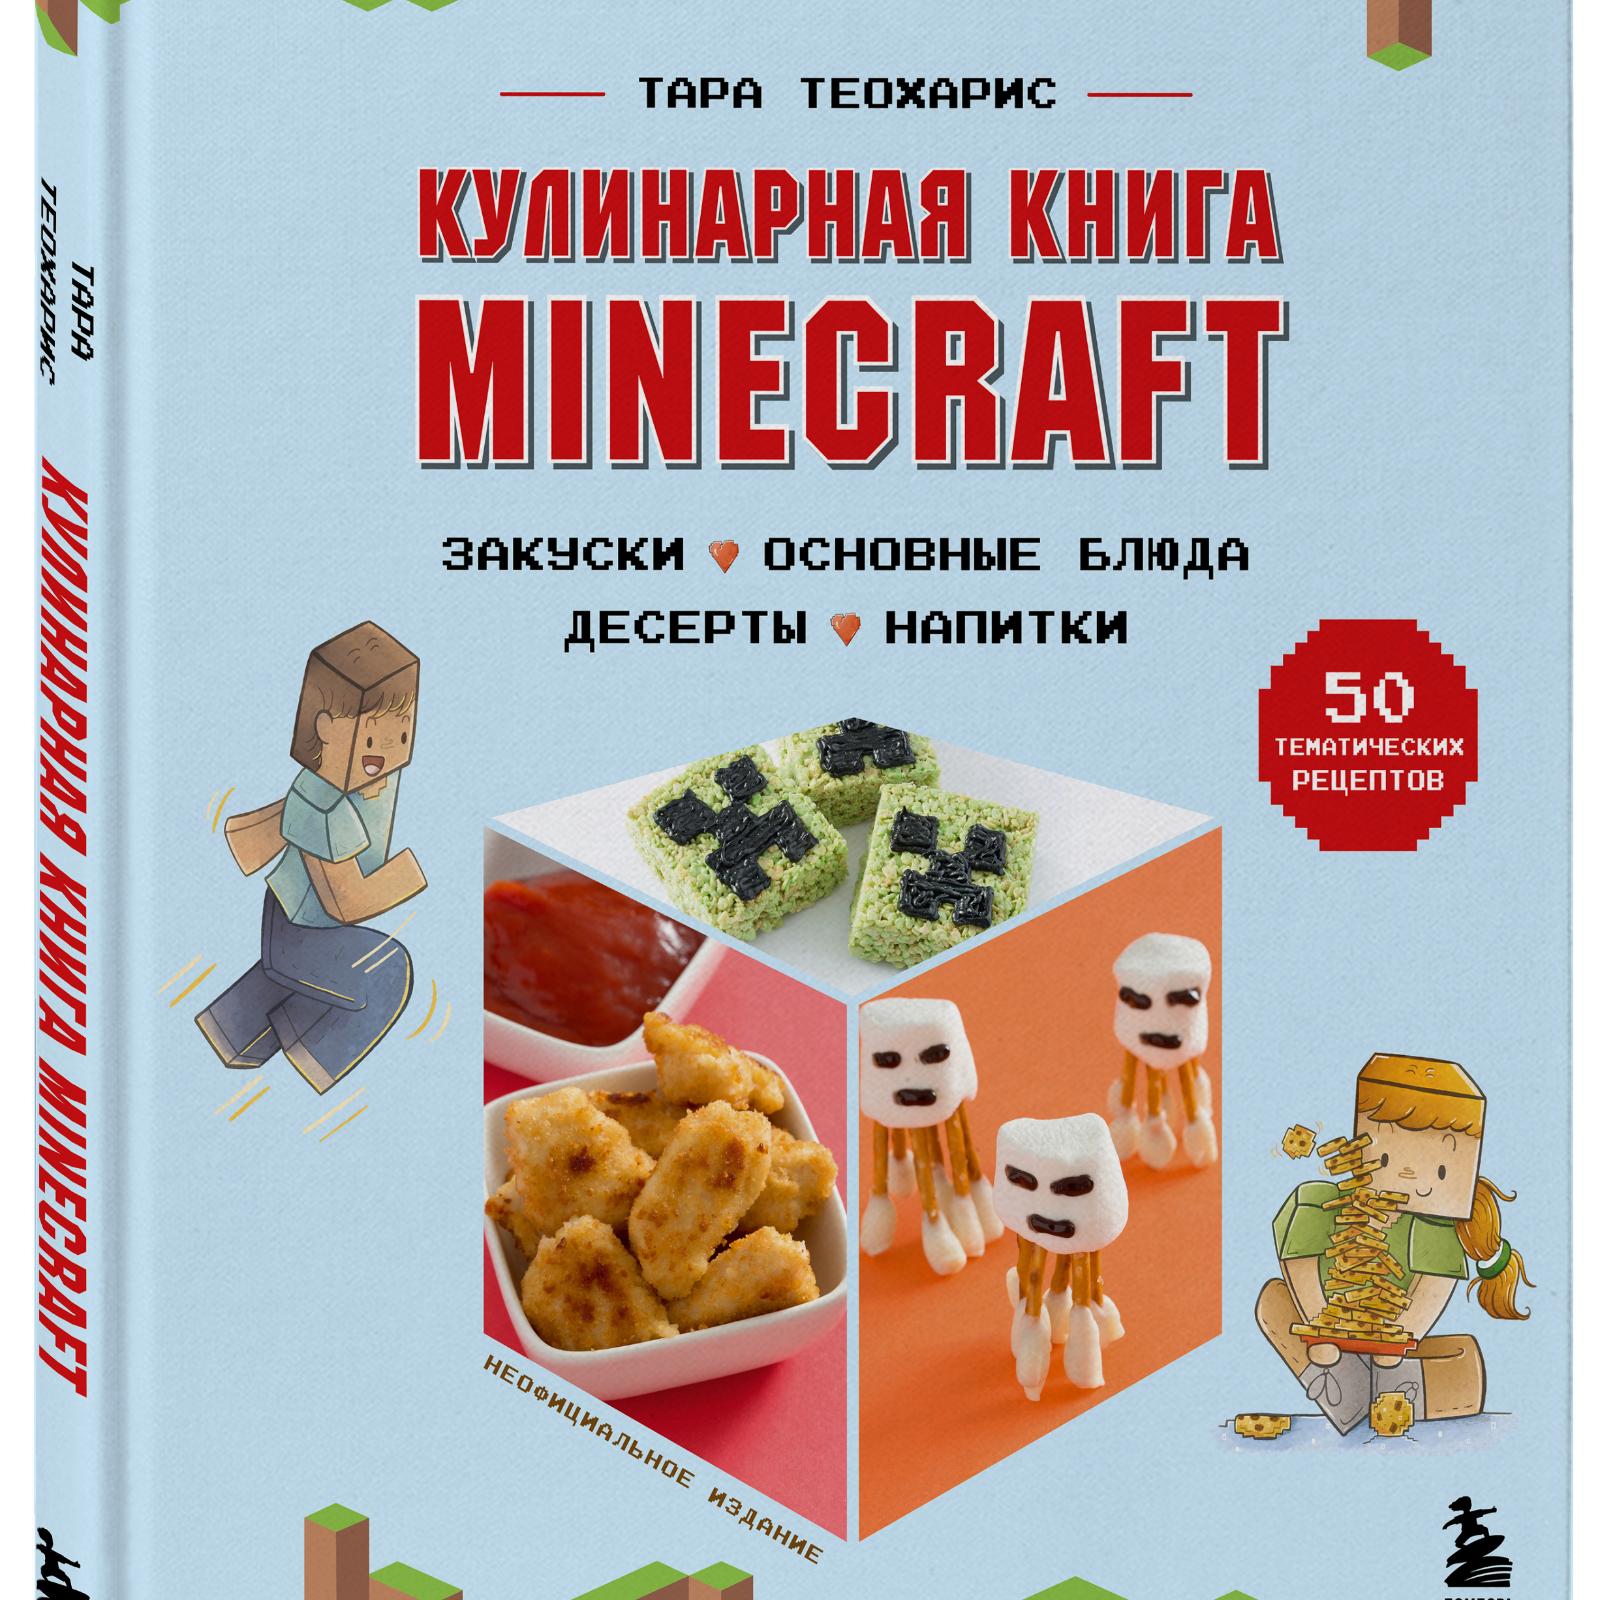 Будем готовить сами! В августе выходят кулинарные рецепты из игры Minecraft